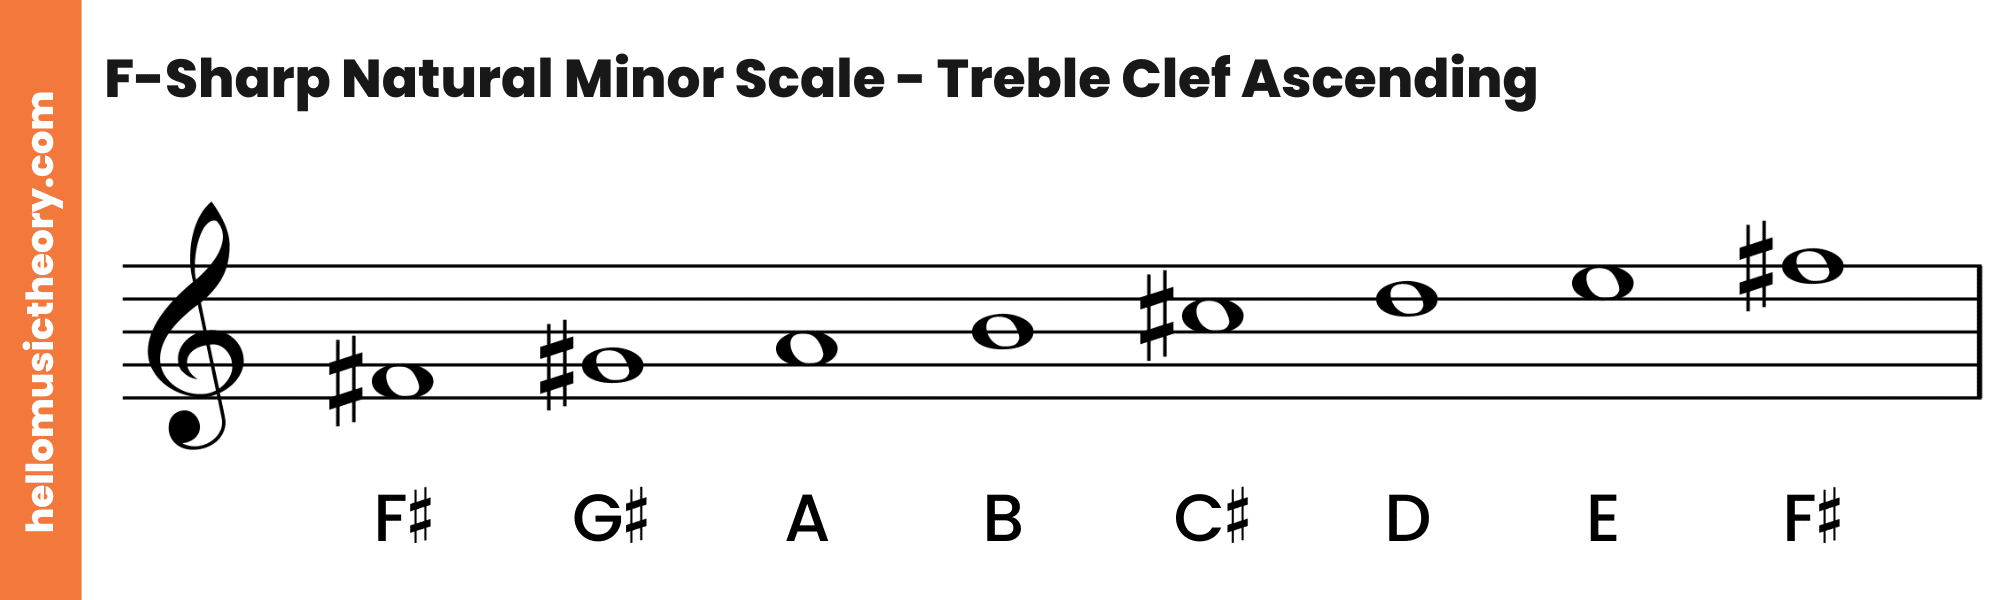 F-Sharp-Natural-Minor-Scale-Treble-Clef-Ascending